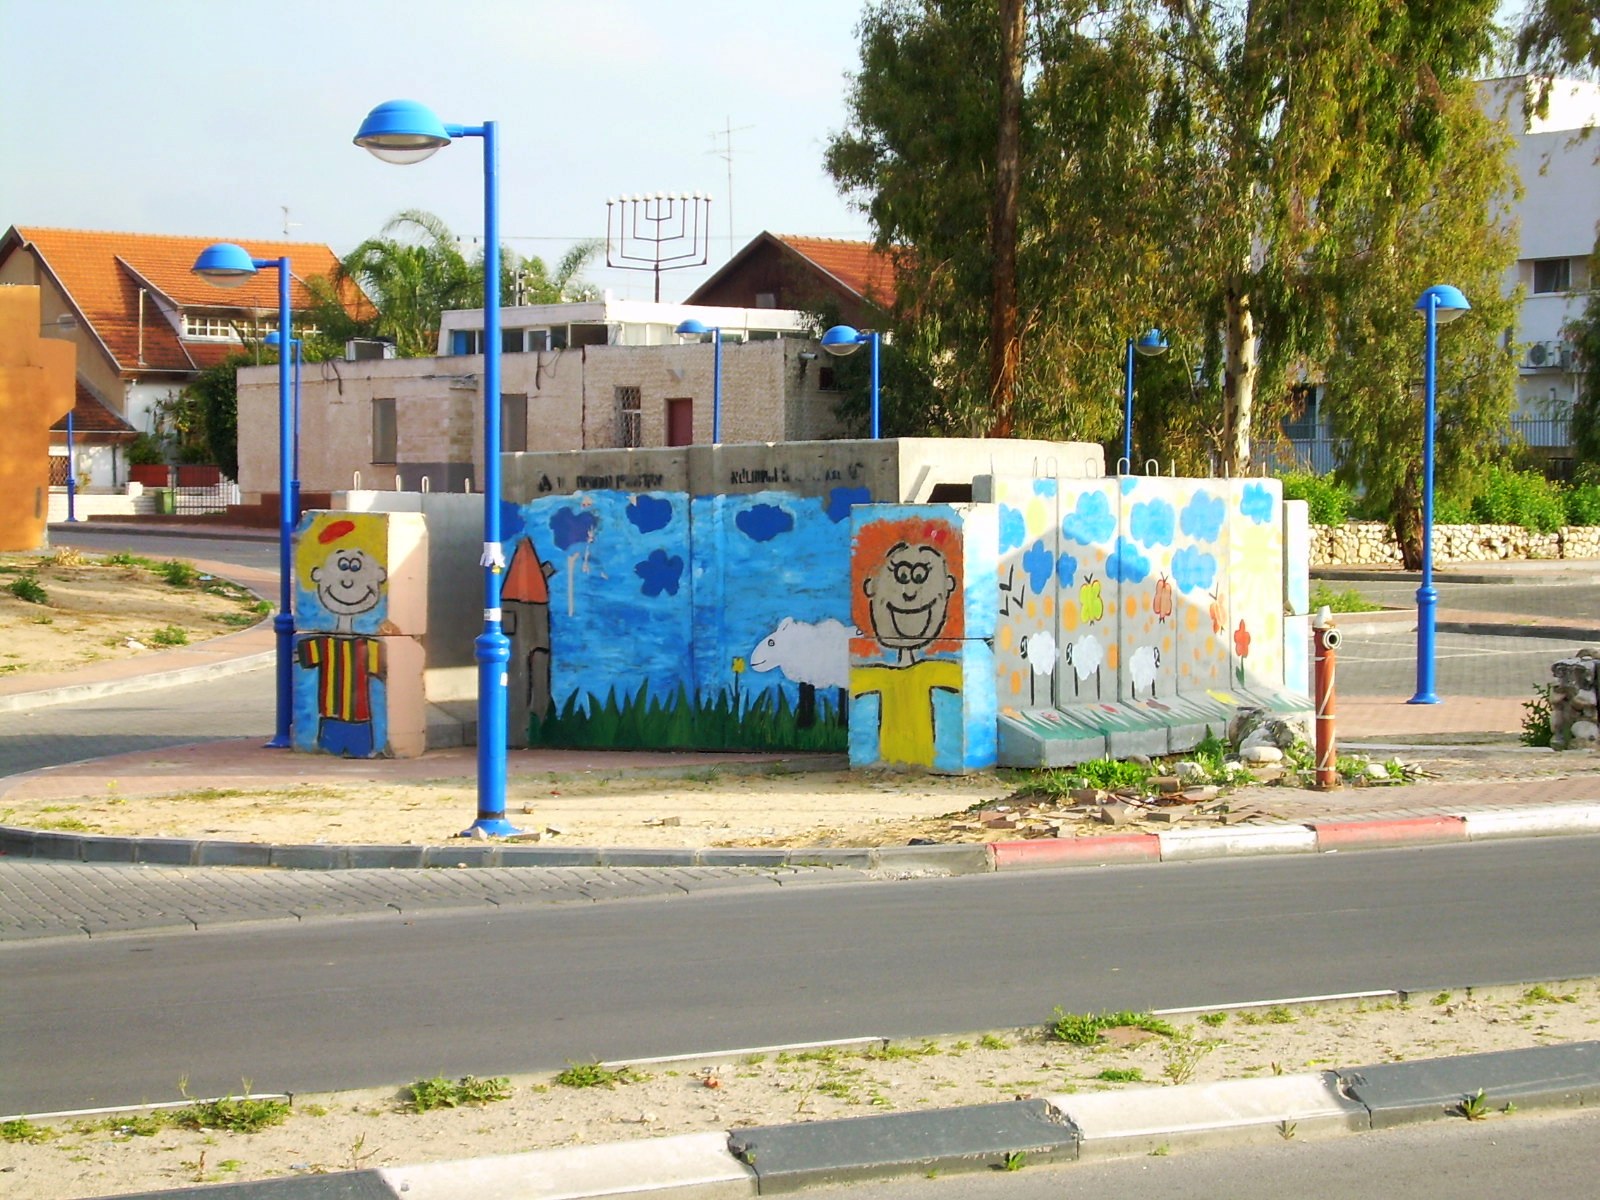 Sderot: A City Under Siege